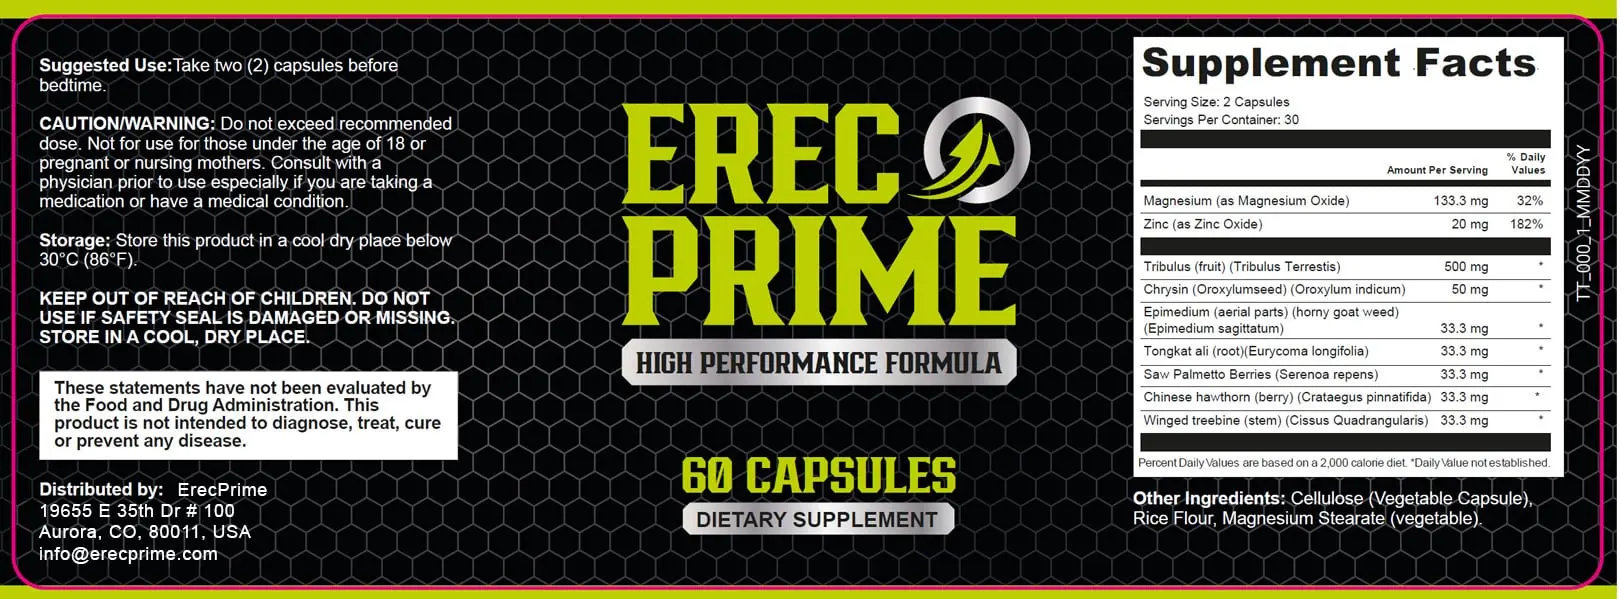 erecprime-supplement-ingredients